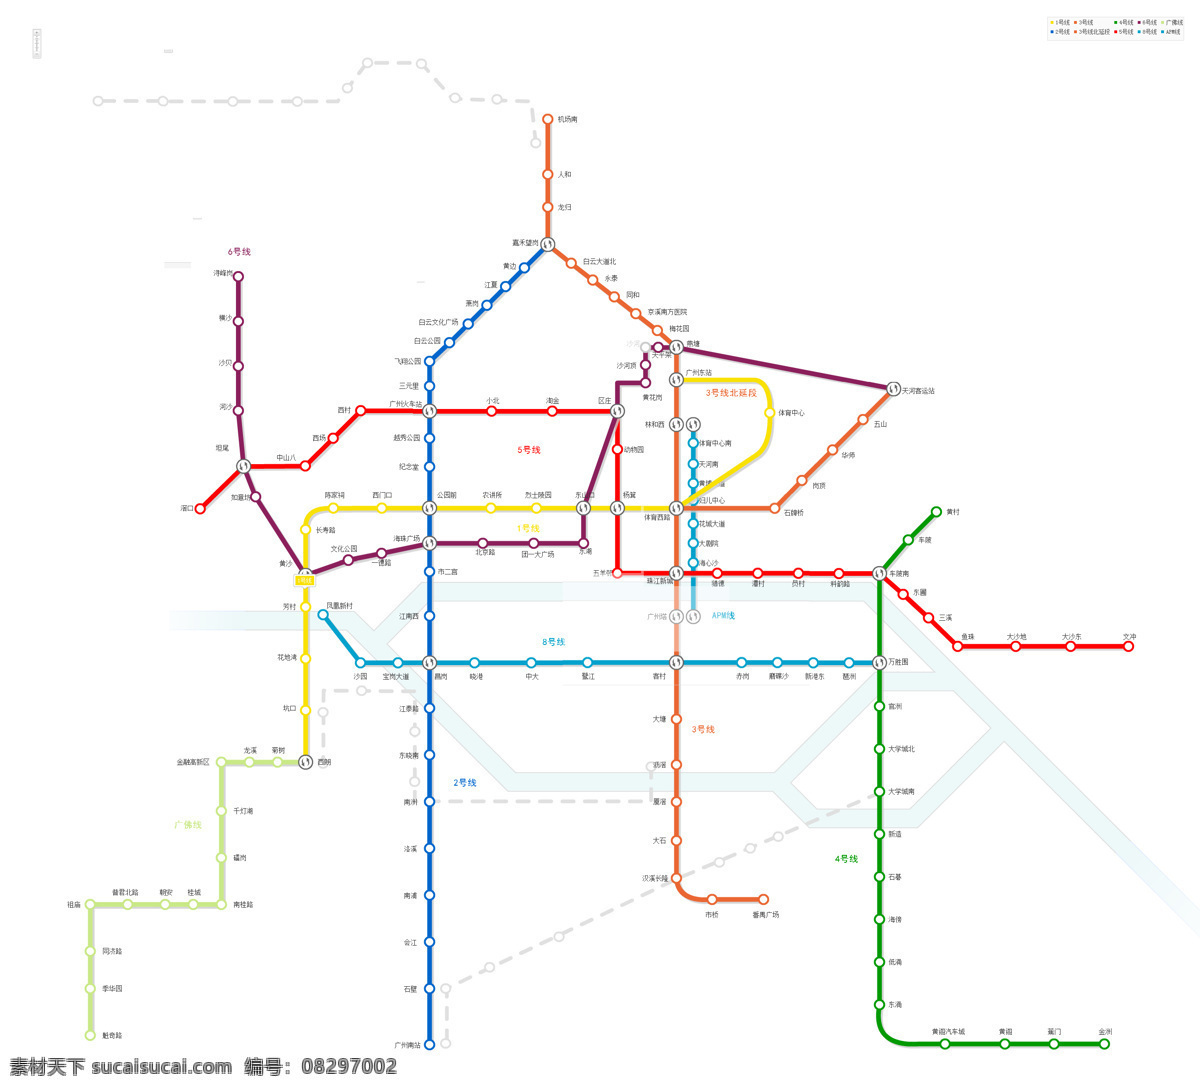 广州 地铁 线路图 交通 示意图